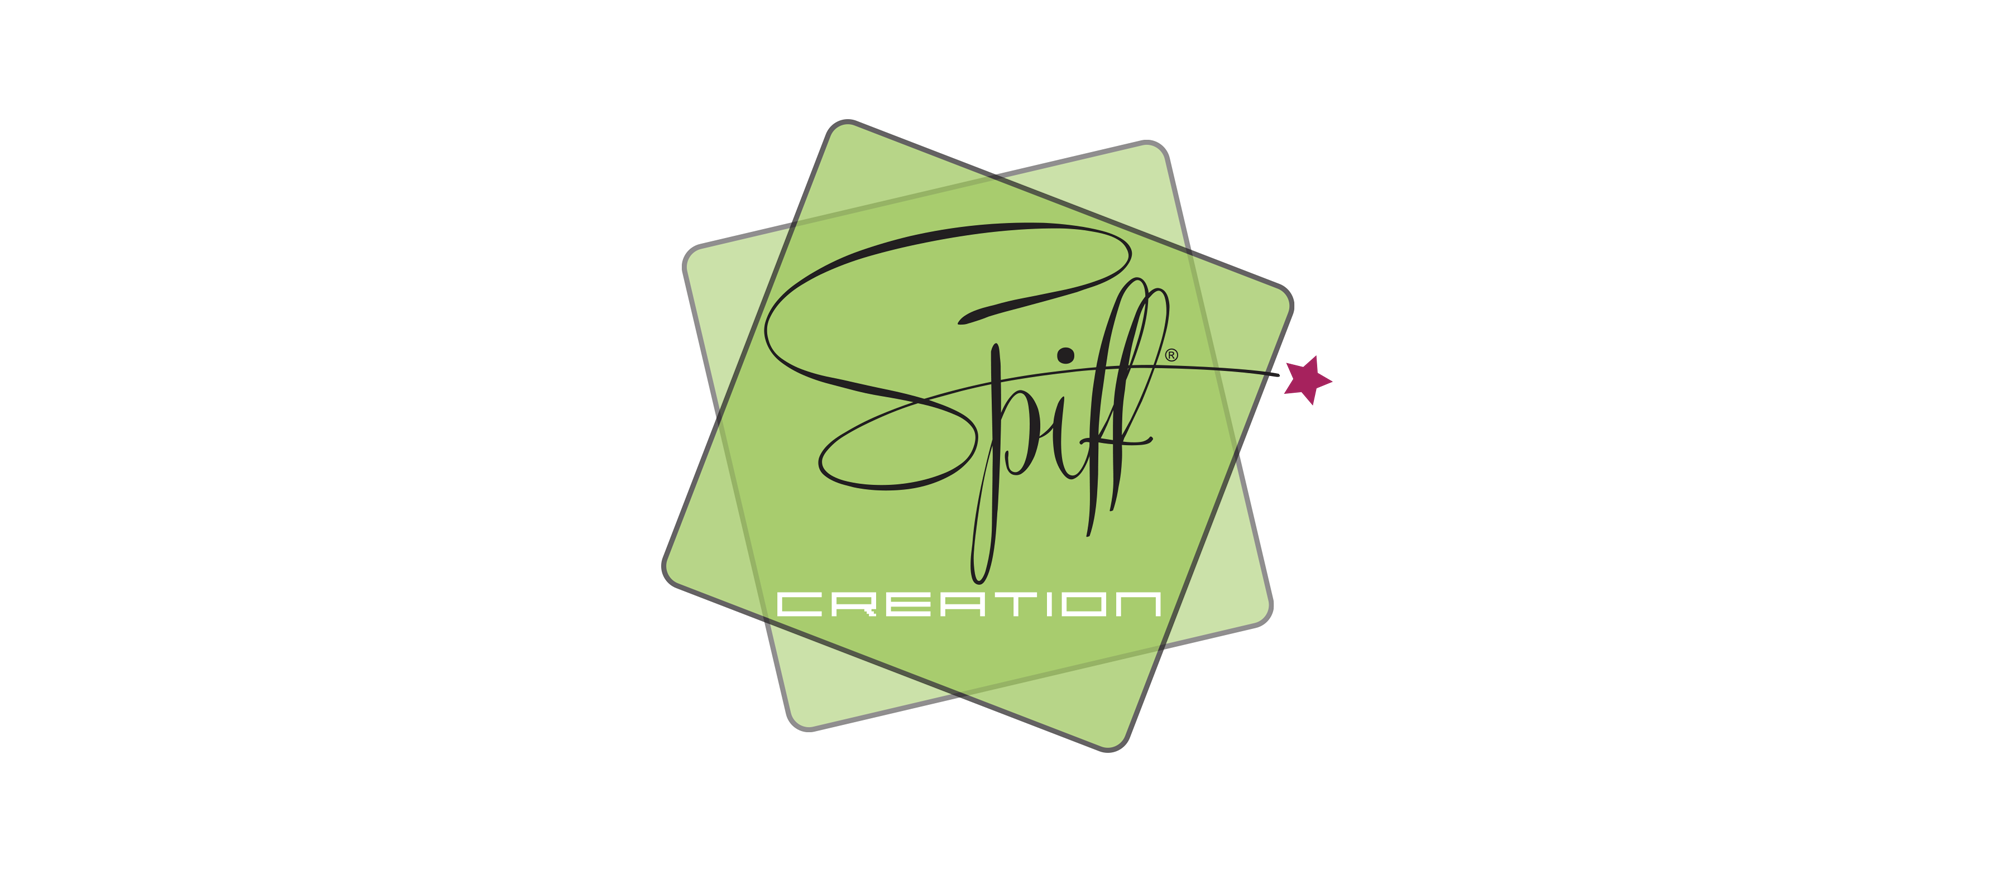 Spiff Creation - creazioni emozionali